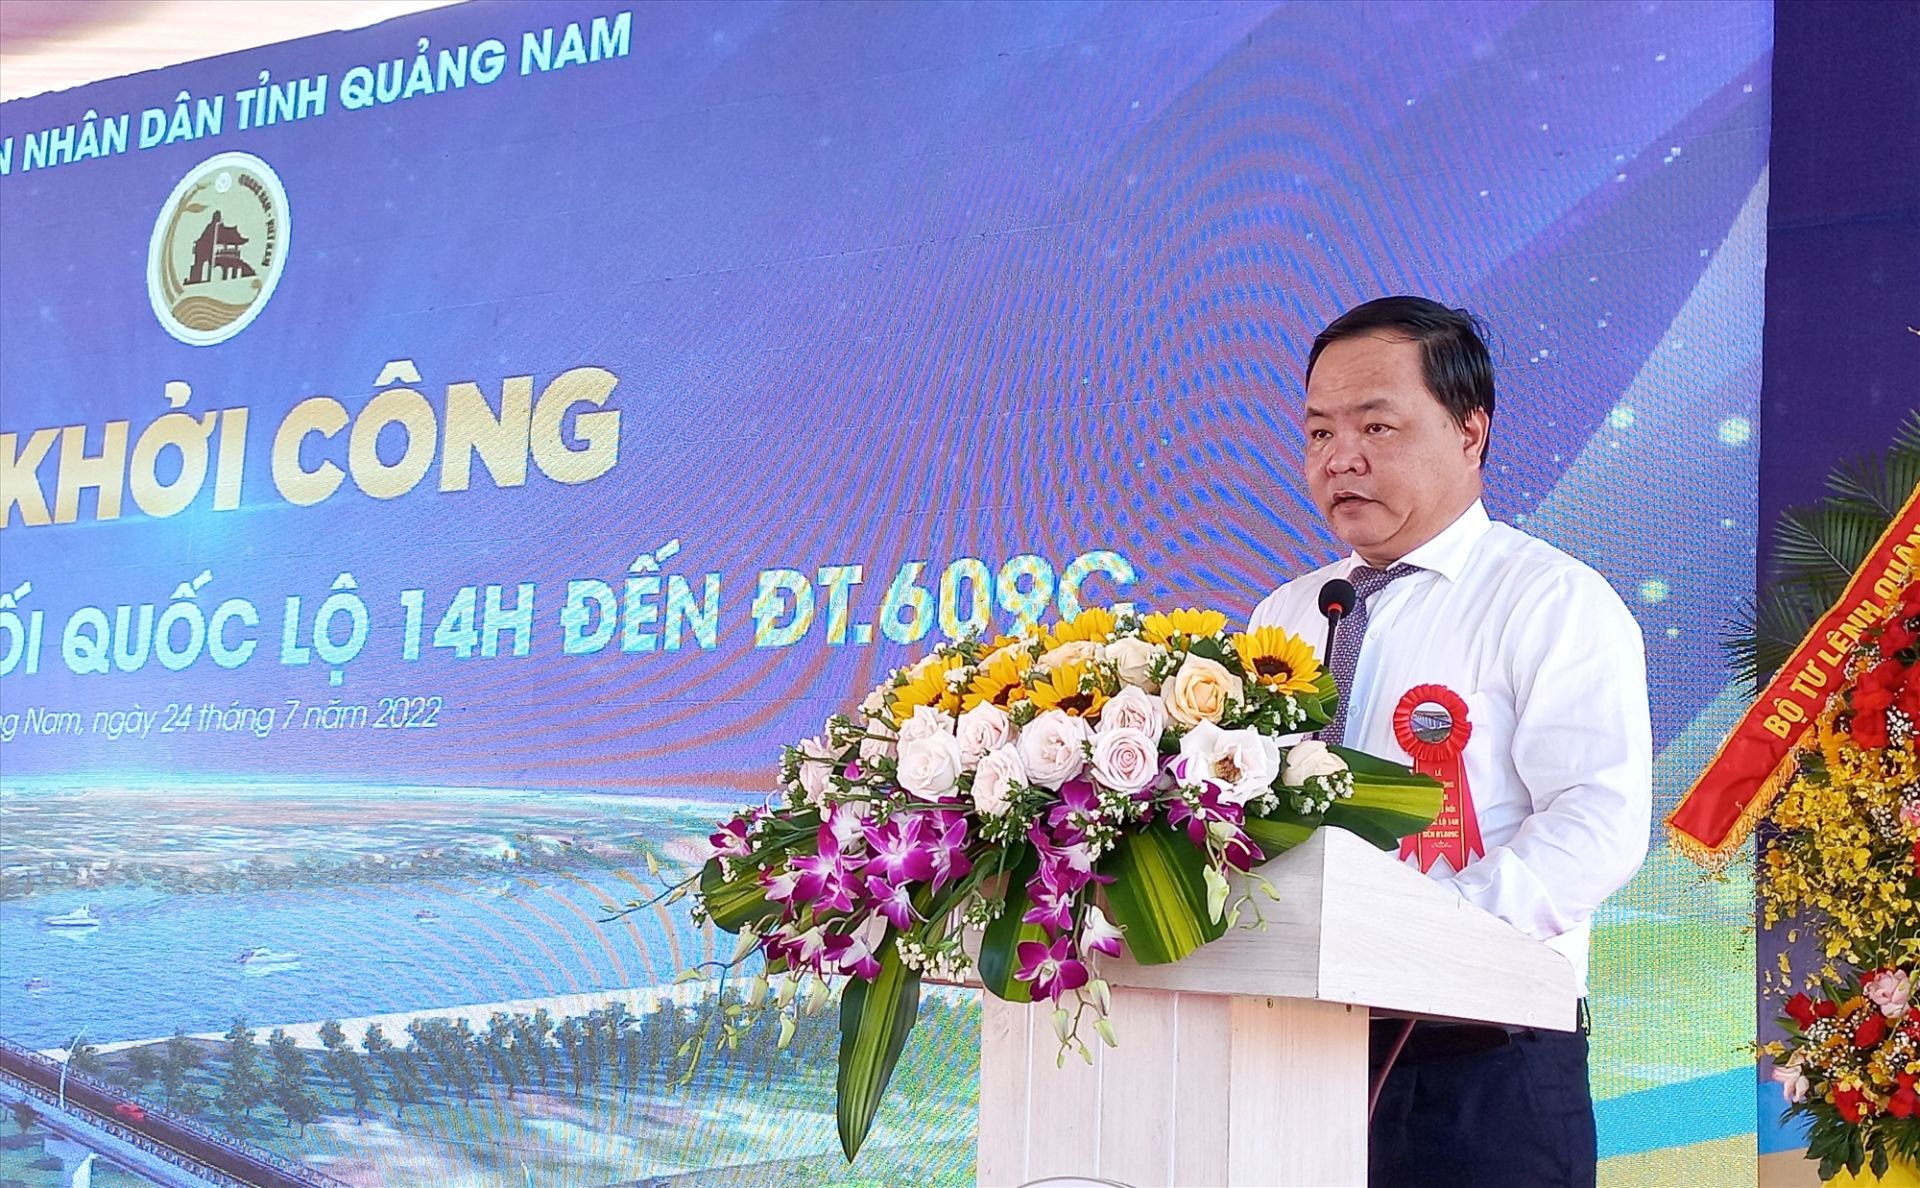 Ông Nguyễn Hồng Quang, Phó Chủ tịch UBND tỉnh Quảng Nam phát biểu tại buổi lễ.